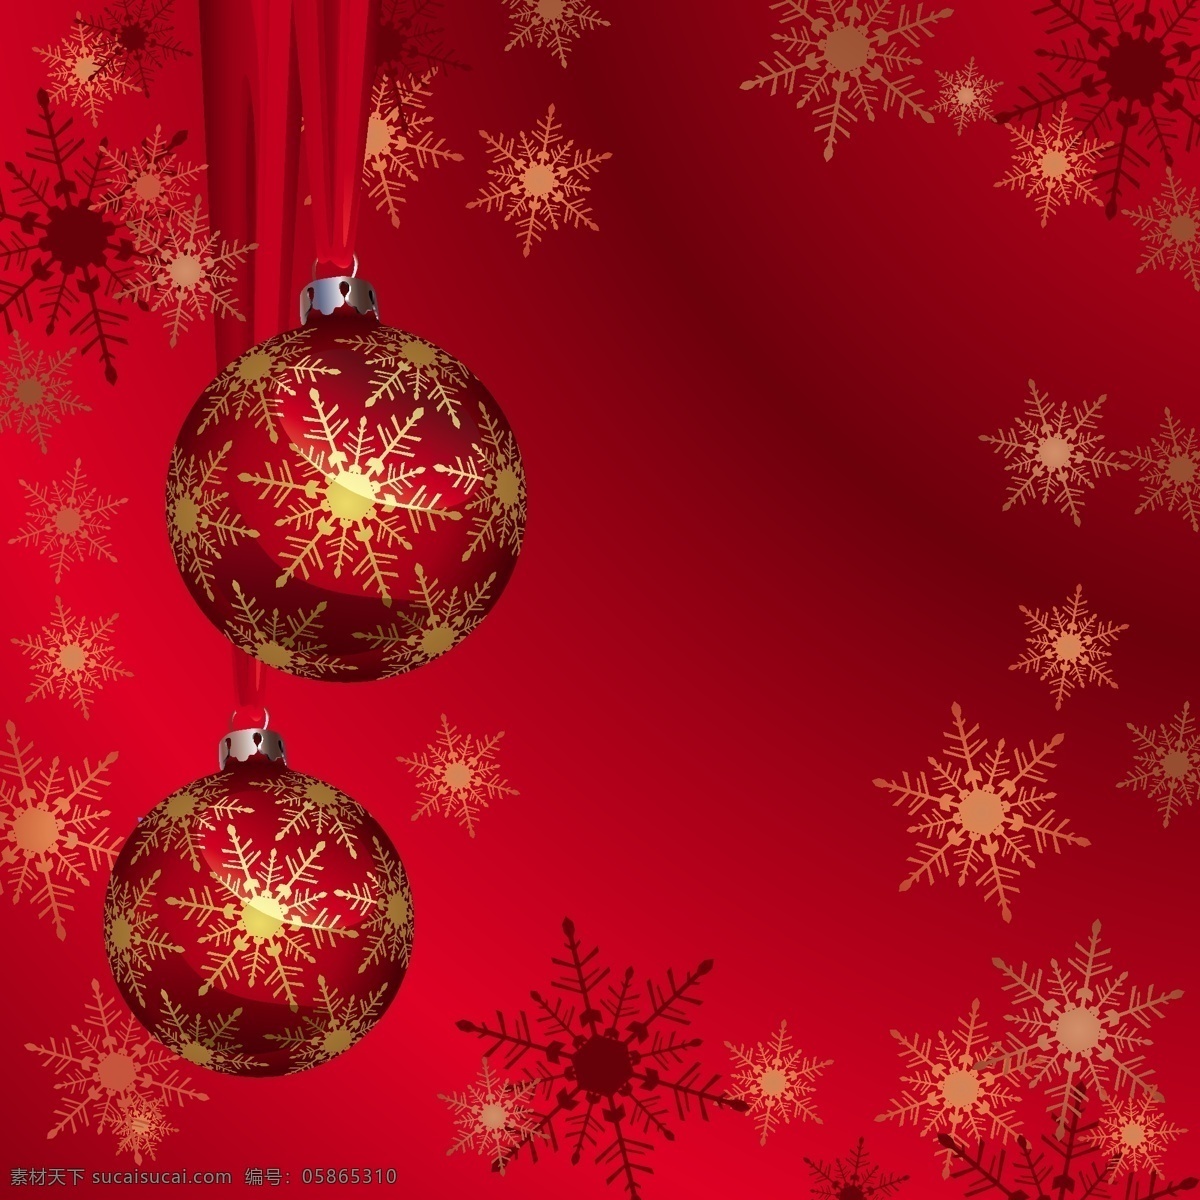 矢量 华丽 雪花 吊球 彩球 璀璨 圣诞节 矢量素材 饰品 星光 节日素材